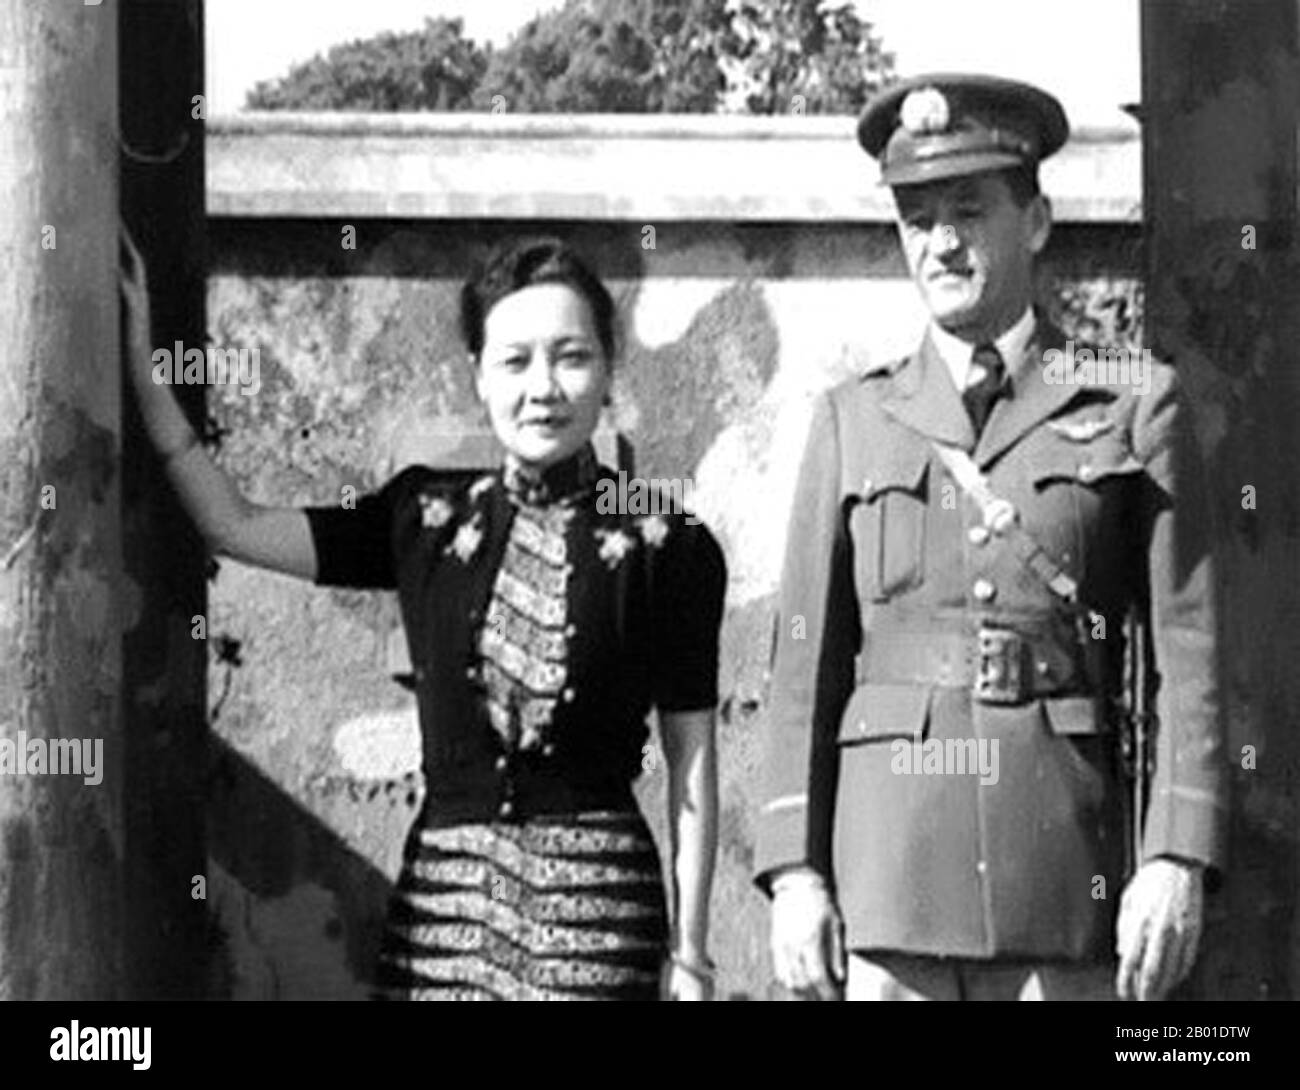 Chine : le général Claire Chennault (6 septembre 1893 - 27 juillet 1958), fondatrice des Flying Tigers, avec Soong May Ling (5 mars 1898 - 23 octobre 2003), alias Madame Chiang Kai Shek, Yunnan, vers 1940. Soong May-ling ou Soong Mei-ling, également connue sous le nom de Madame Chiang Kai-shek (chinois traditionnel: 宋美齡; chinois simplifié: 宋美龄; pinyin: Sòng Měilíng) était une première Dame de la République de Chine (ROC), épouse de l'ancien Président Chiang Kai-shek (蔣中正 / 蔣介石). Le Lieutenant-général Claire Lee Chennault était un aviateur militaire américain qui a travaillé comme entraîneur et conseiller en aviation en Chine pendant la Seconde Guerre mondiale Banque D'Images